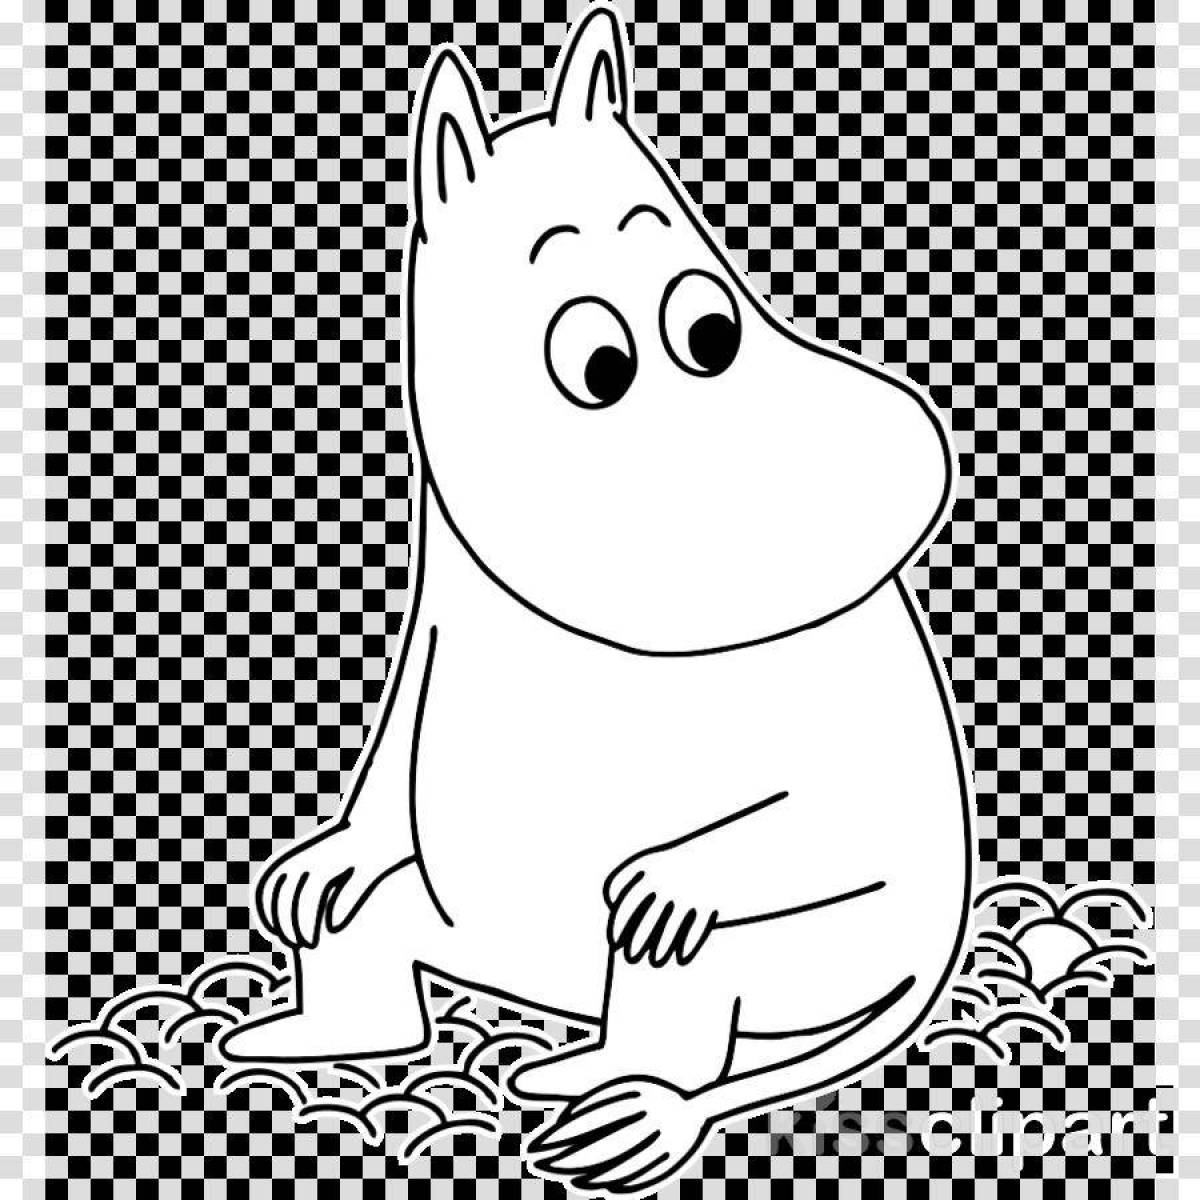 Magic Moomin coloring page